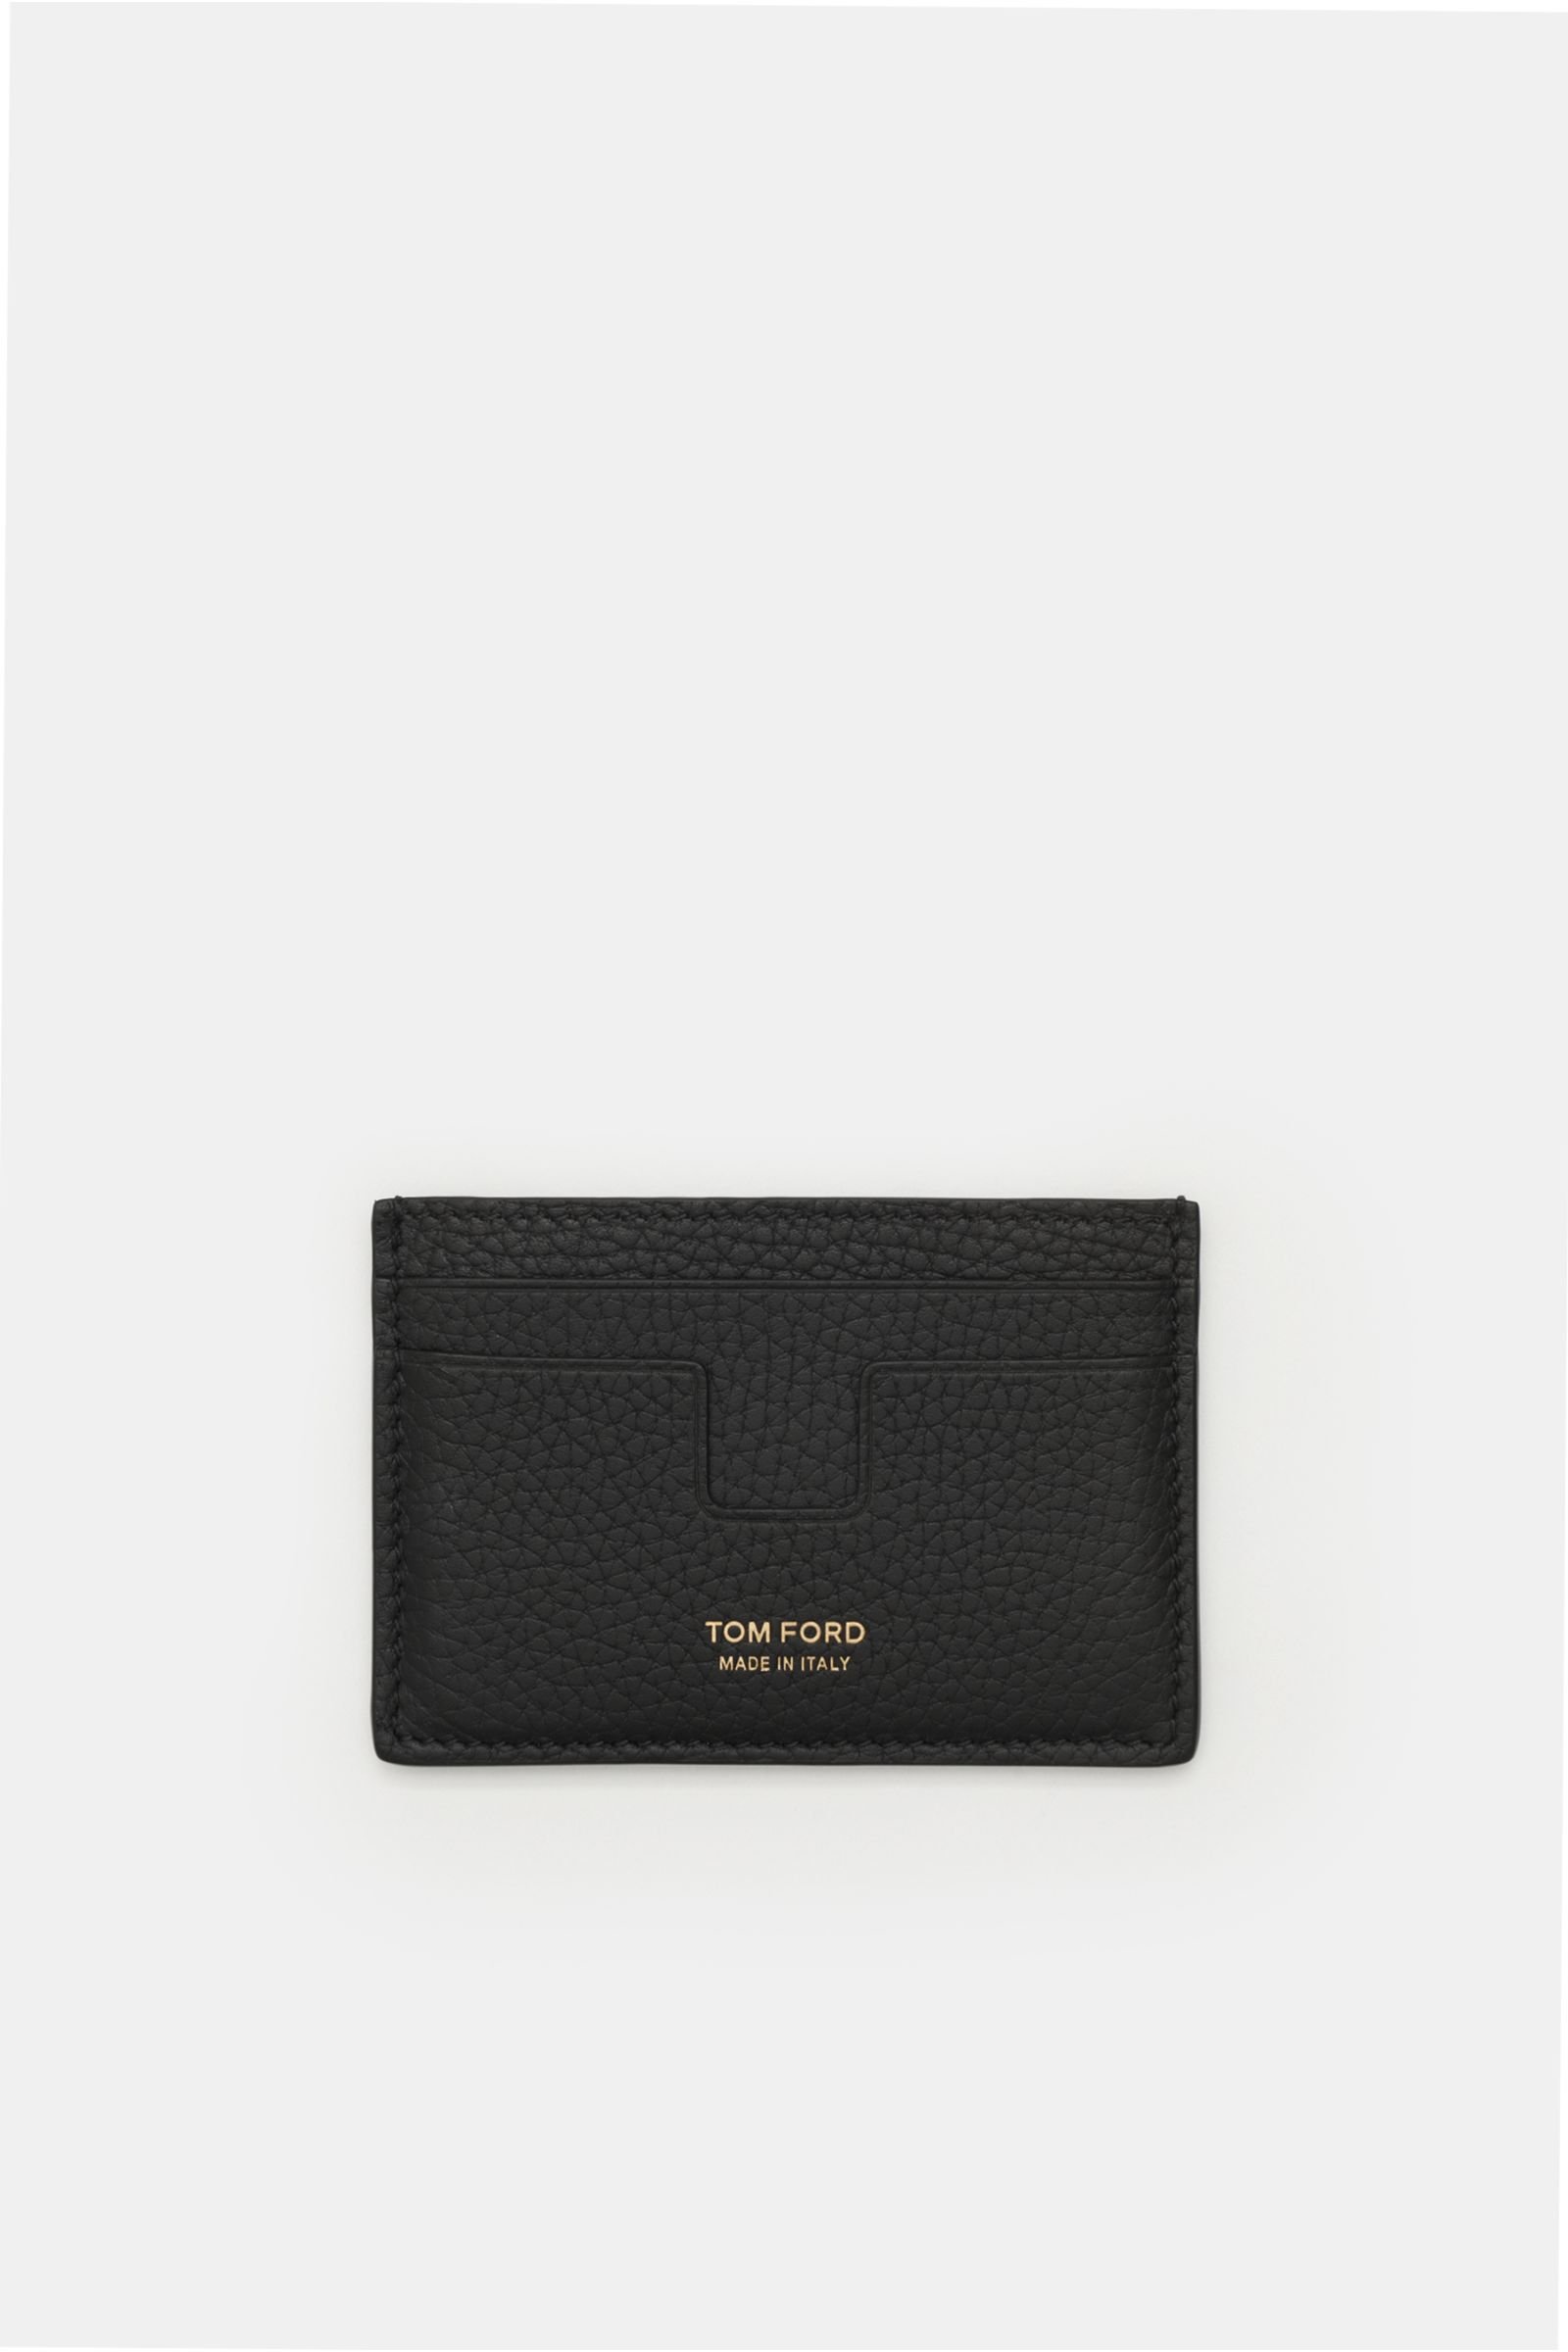 Credit card holder black